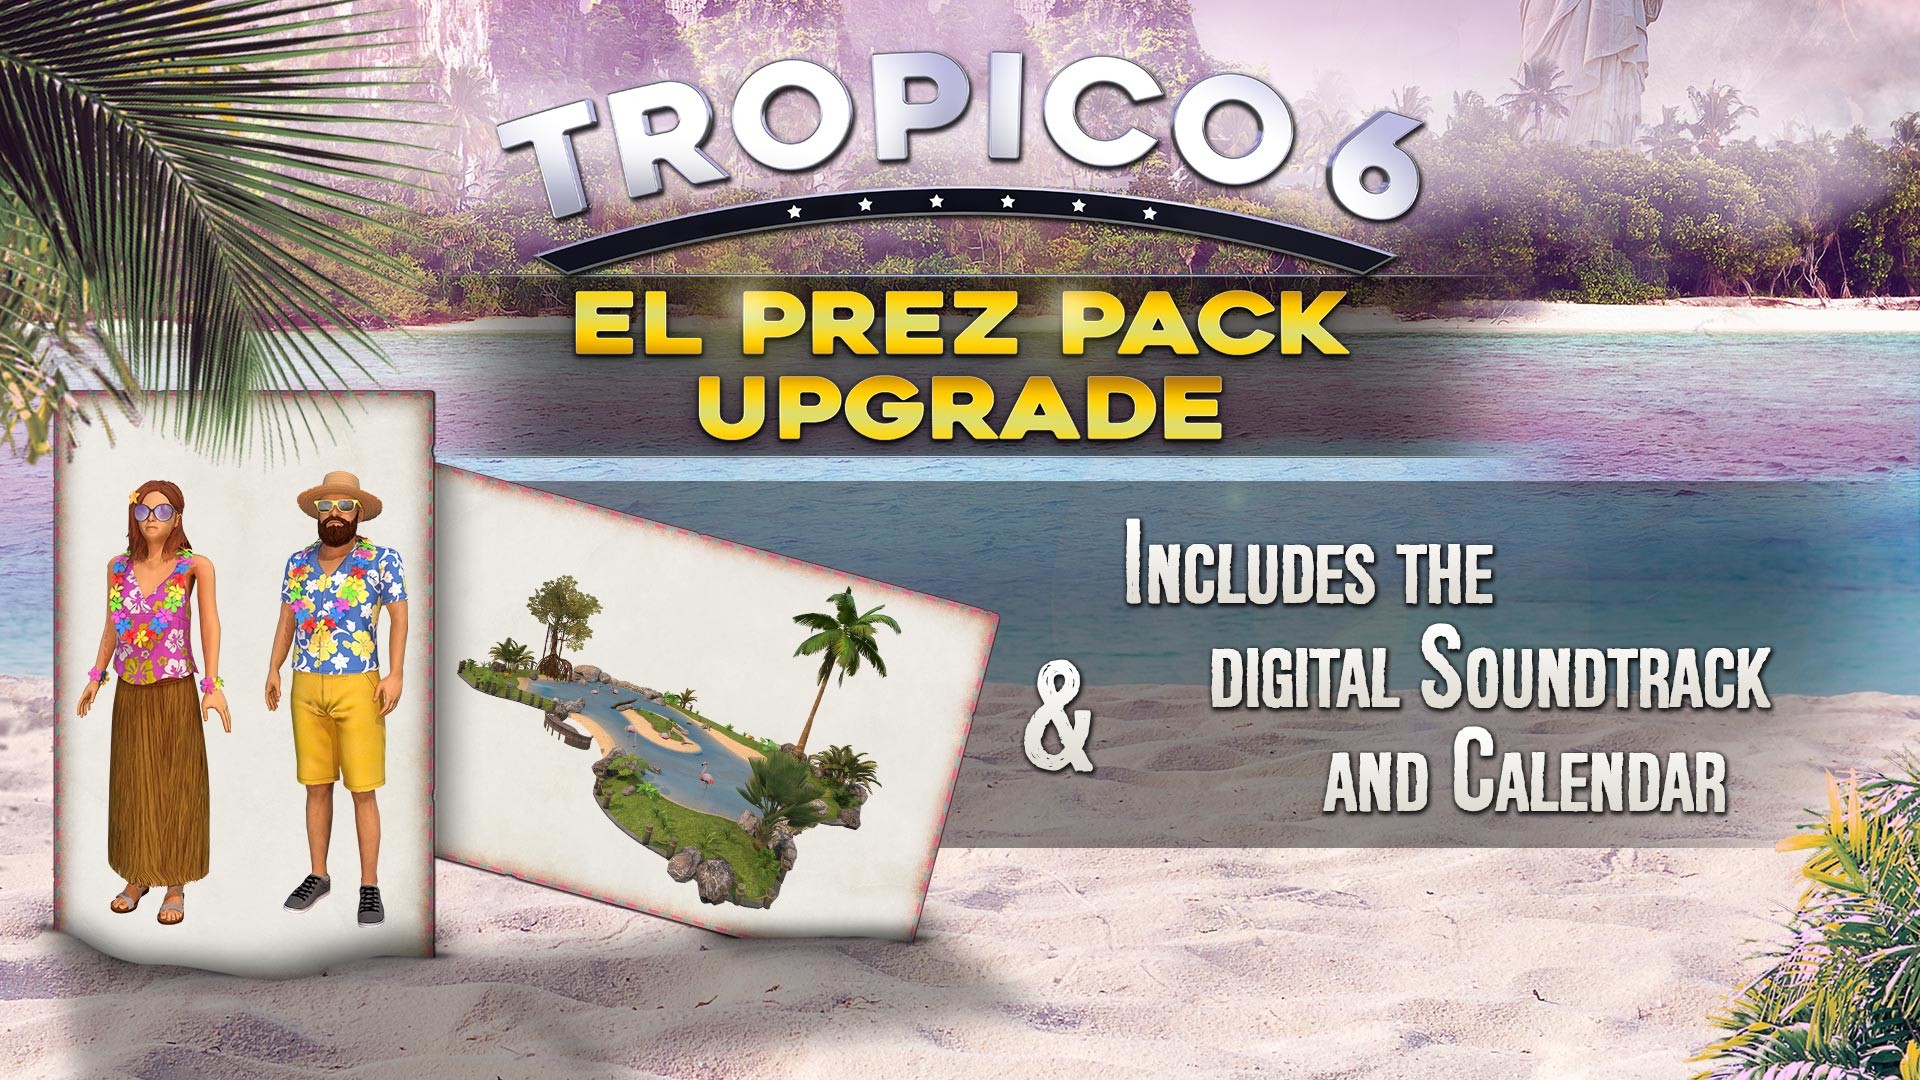 Tropico 6 - El Prez Edition Upgrade